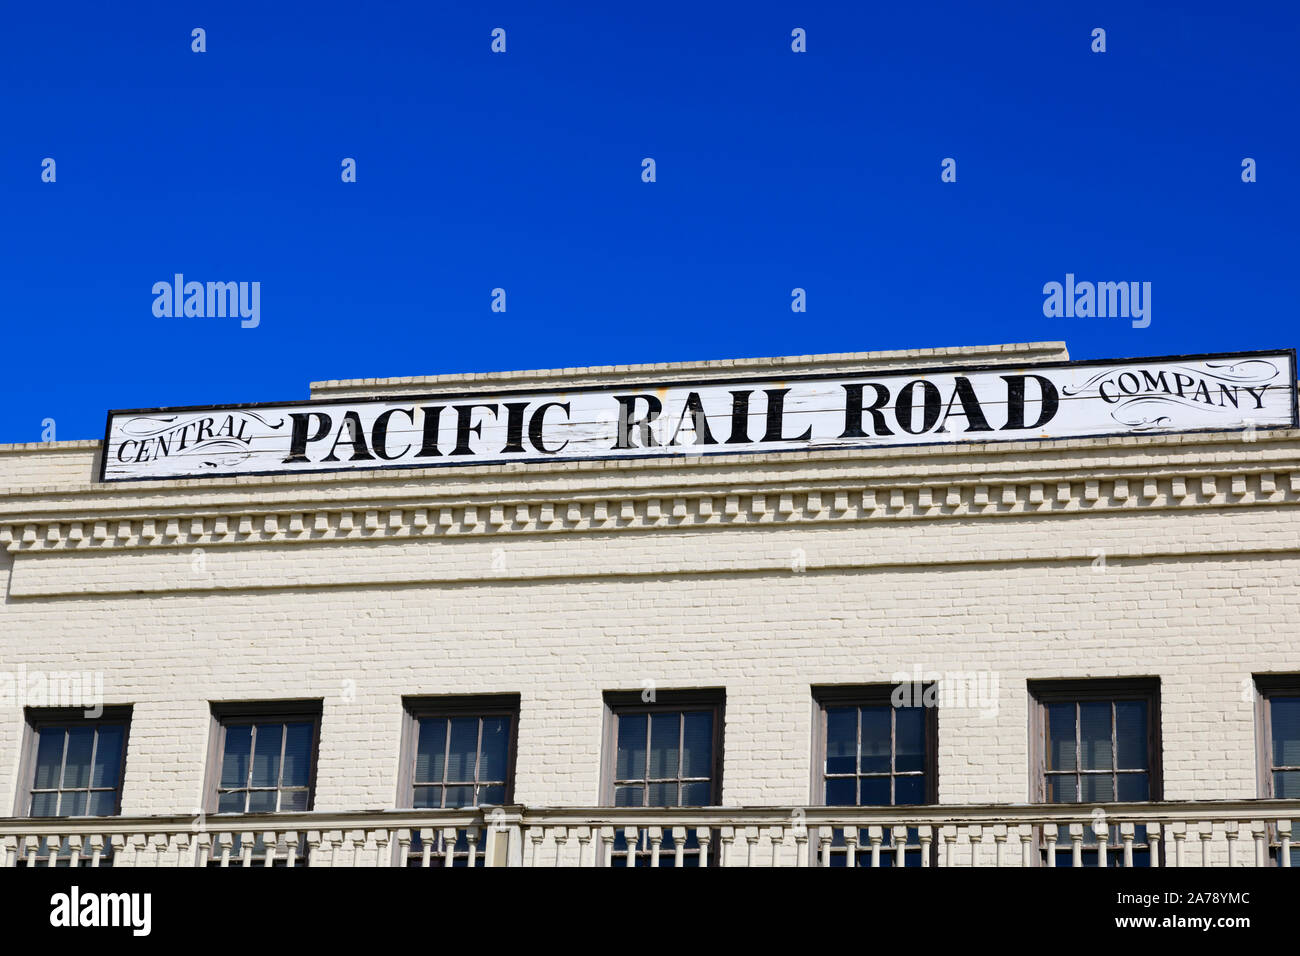 Central Pacific Rail Road Company building, Vieille Ville, Sacramento, capitale de l'État de Californie, États-Unis d'Amérique. Banque D'Images